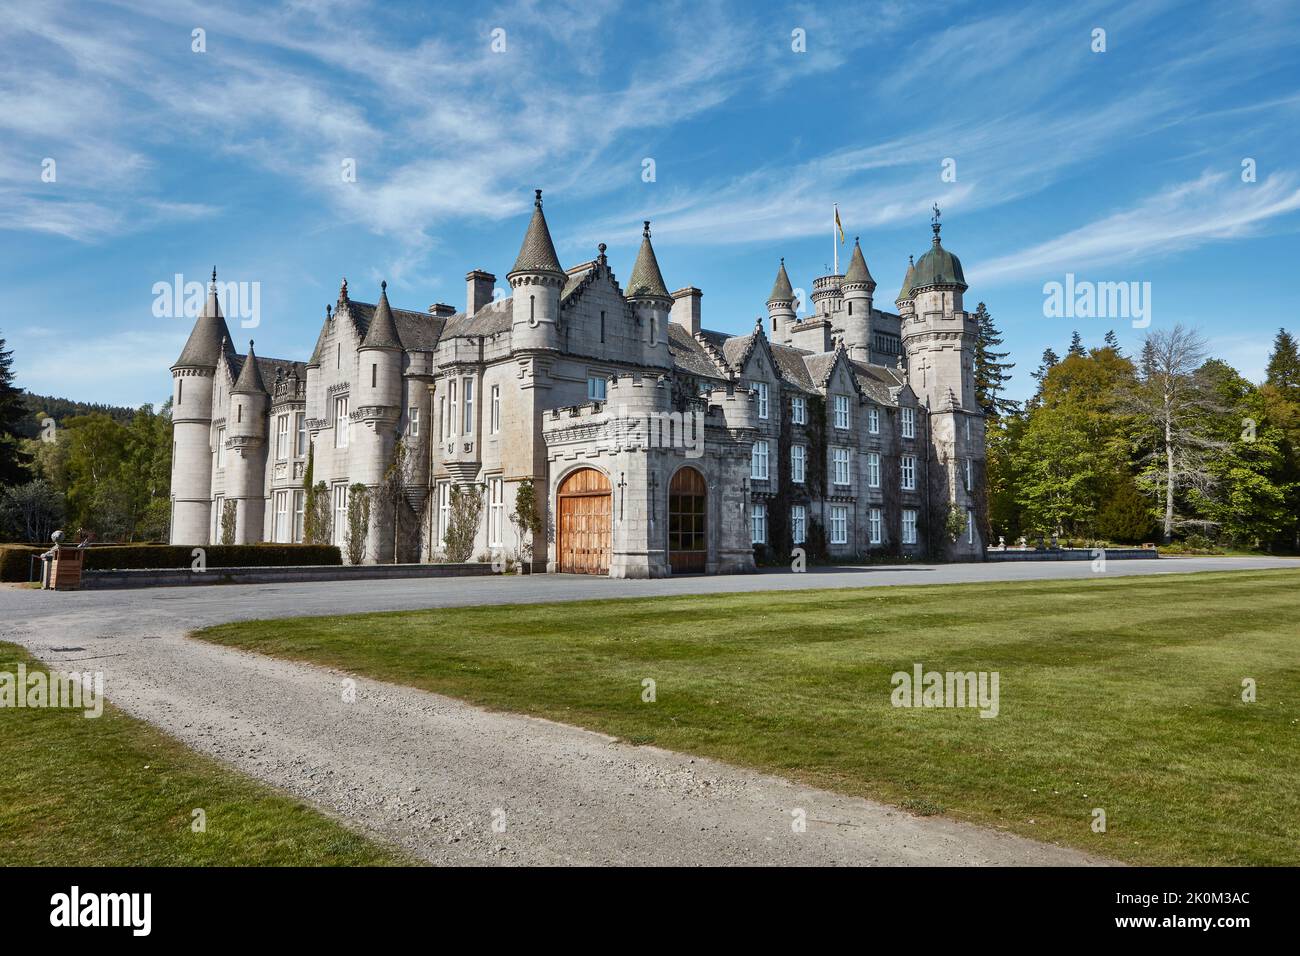 Scotland, Balmoral, Balmoral Castle, 2019, May, 14: Balmoral Castle and Grounds, Royal Deeside, Scotland. Stock Photo